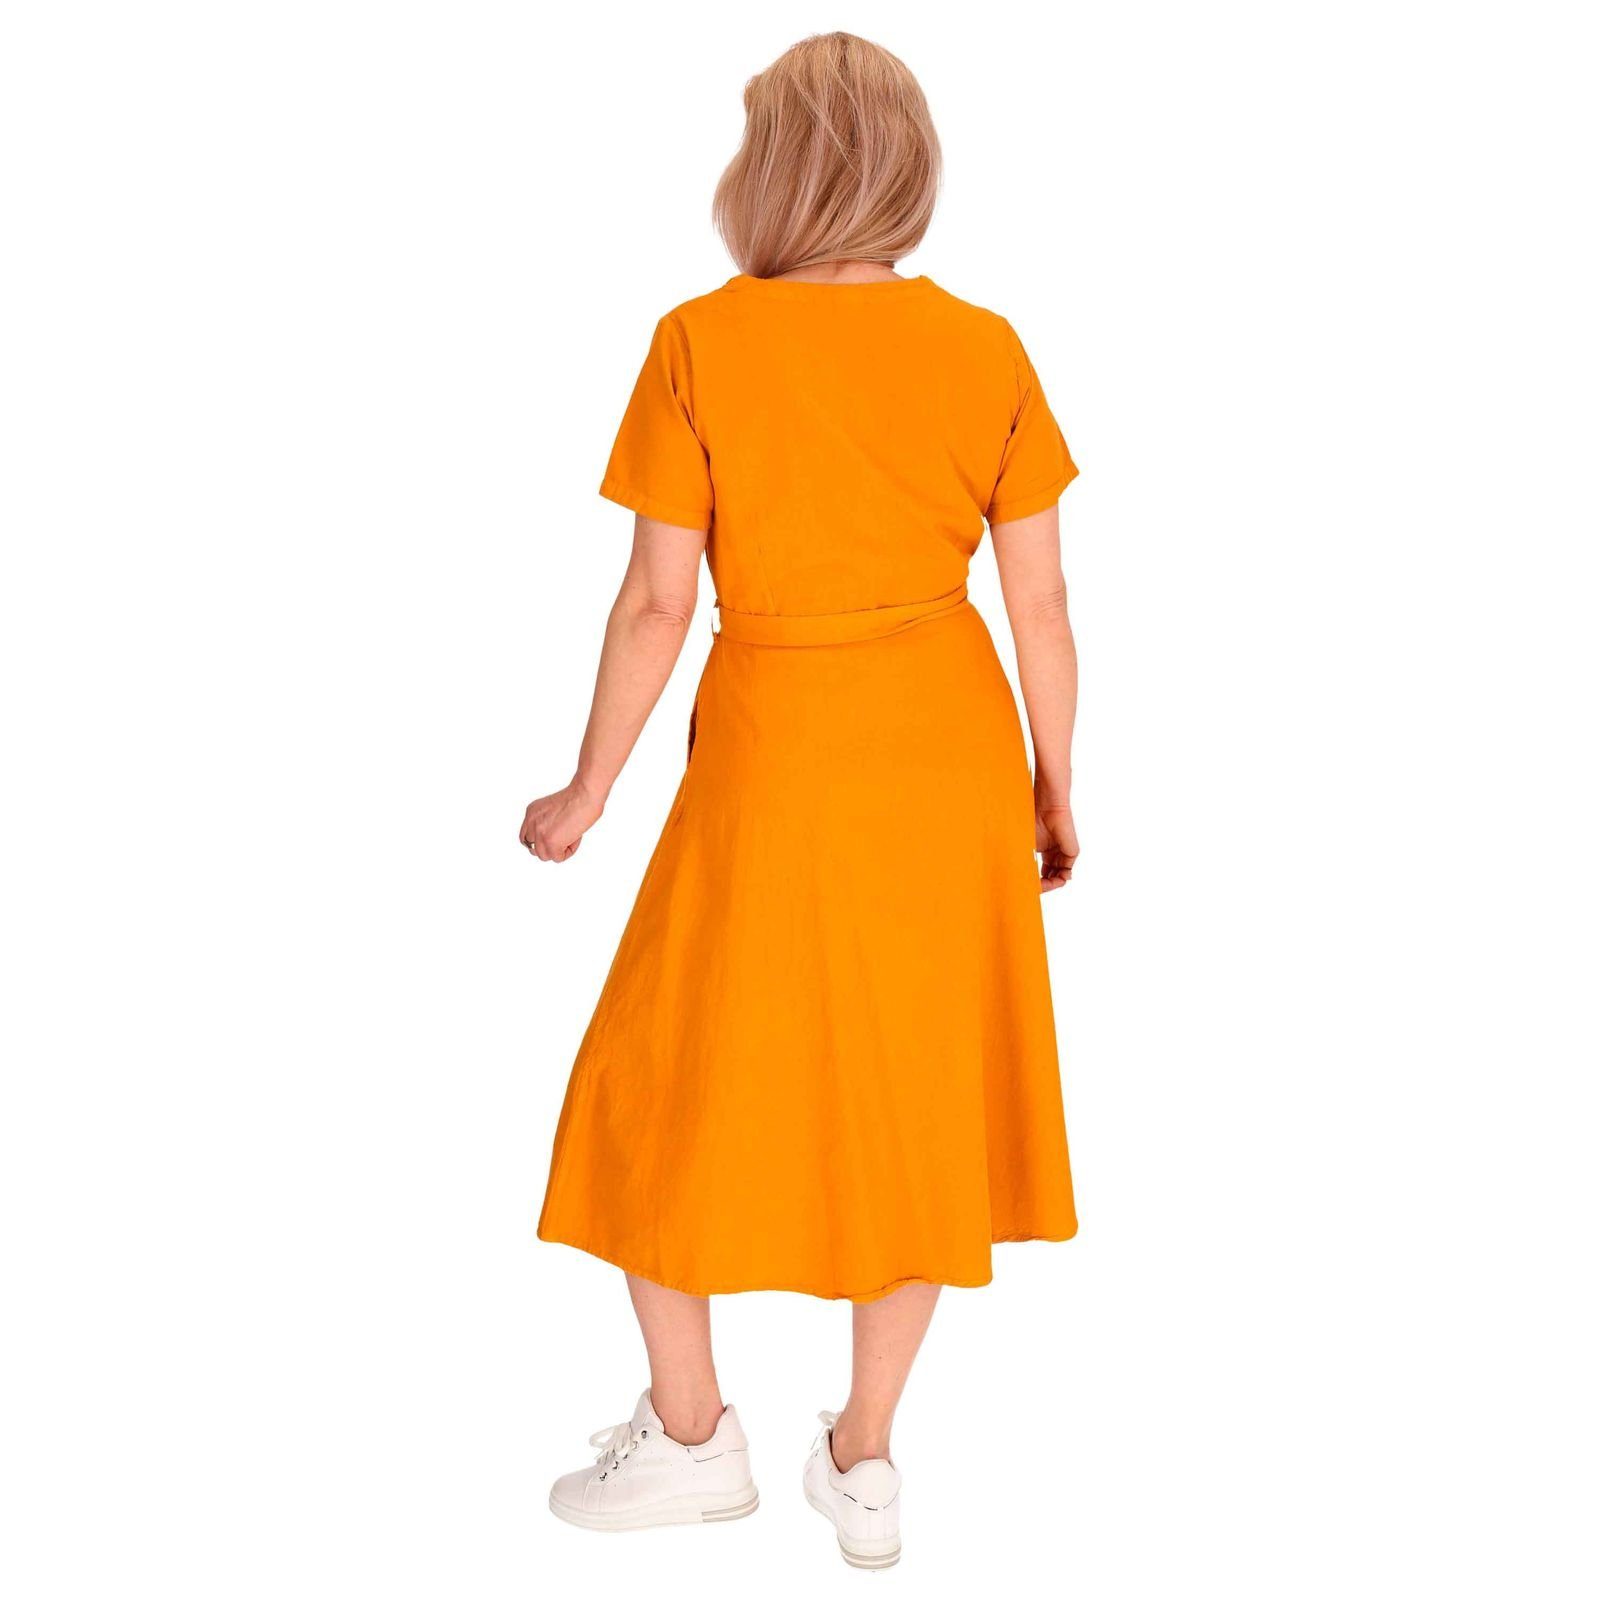 Latzhose Hippie Geköpft Ibiza Kleid Kleid Orange MAGIE KUNST Baumwoll Boho UND Sommerkleid